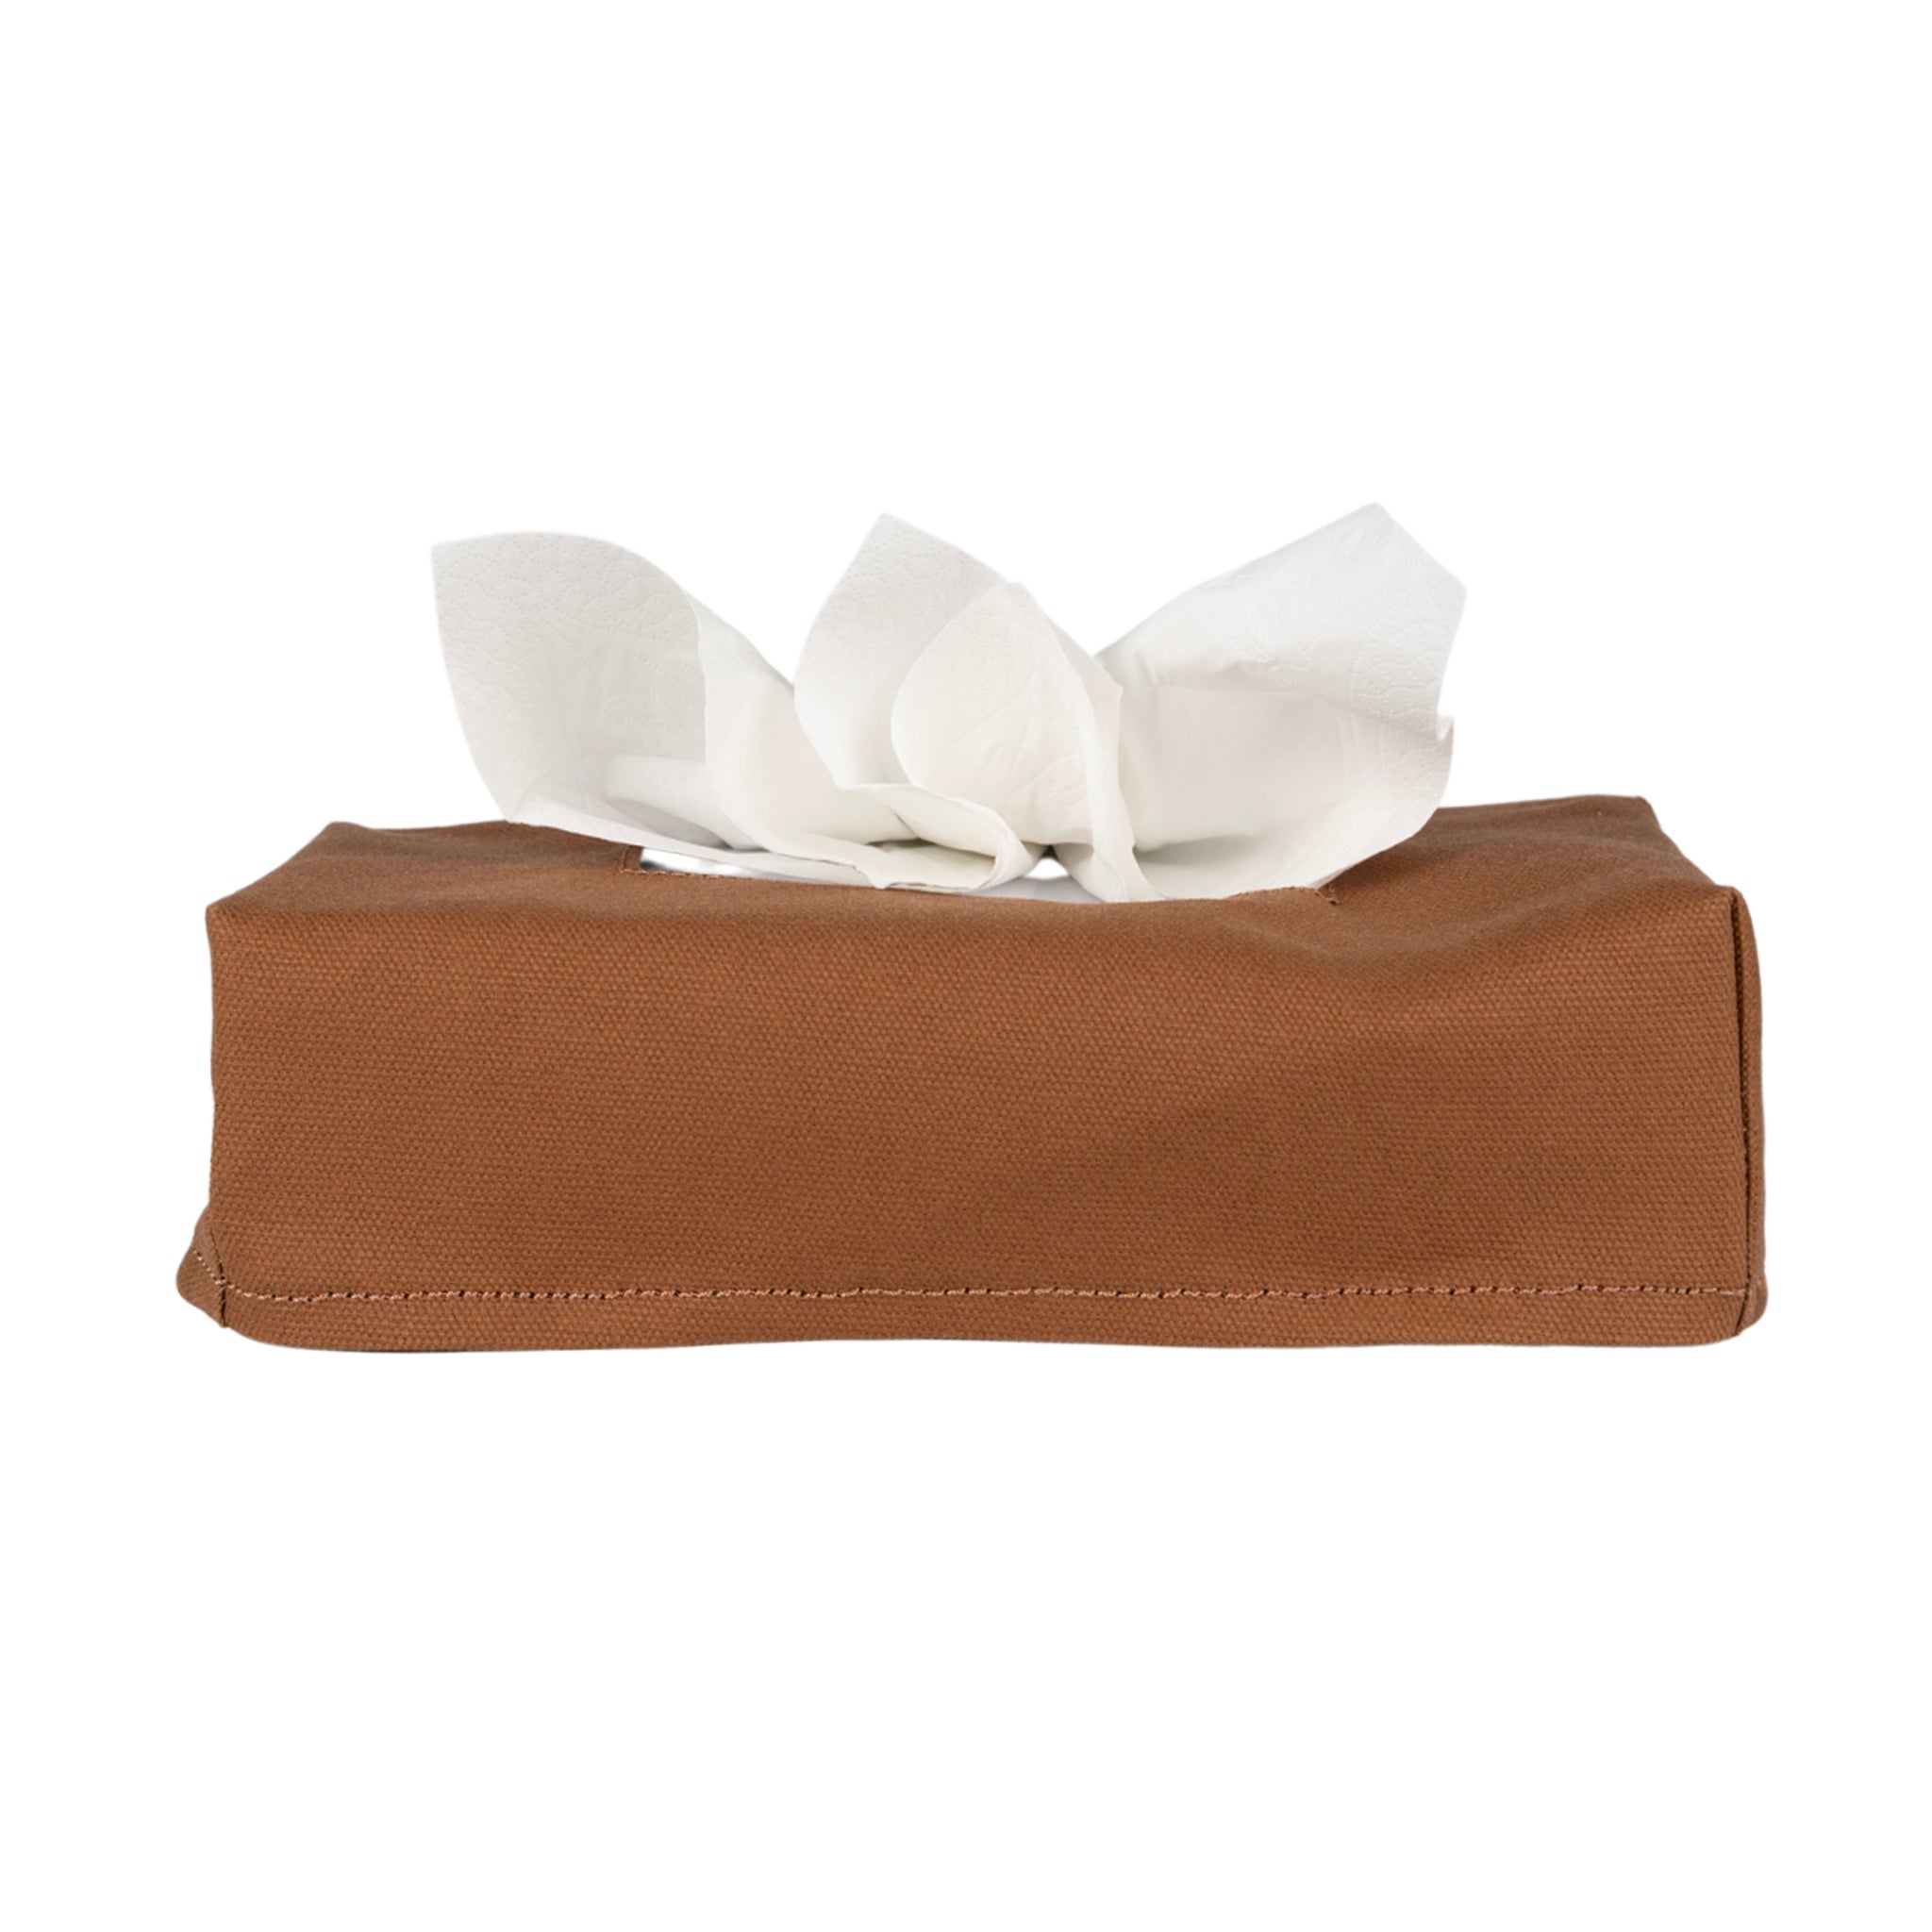 Tissue Box Cover in cotone